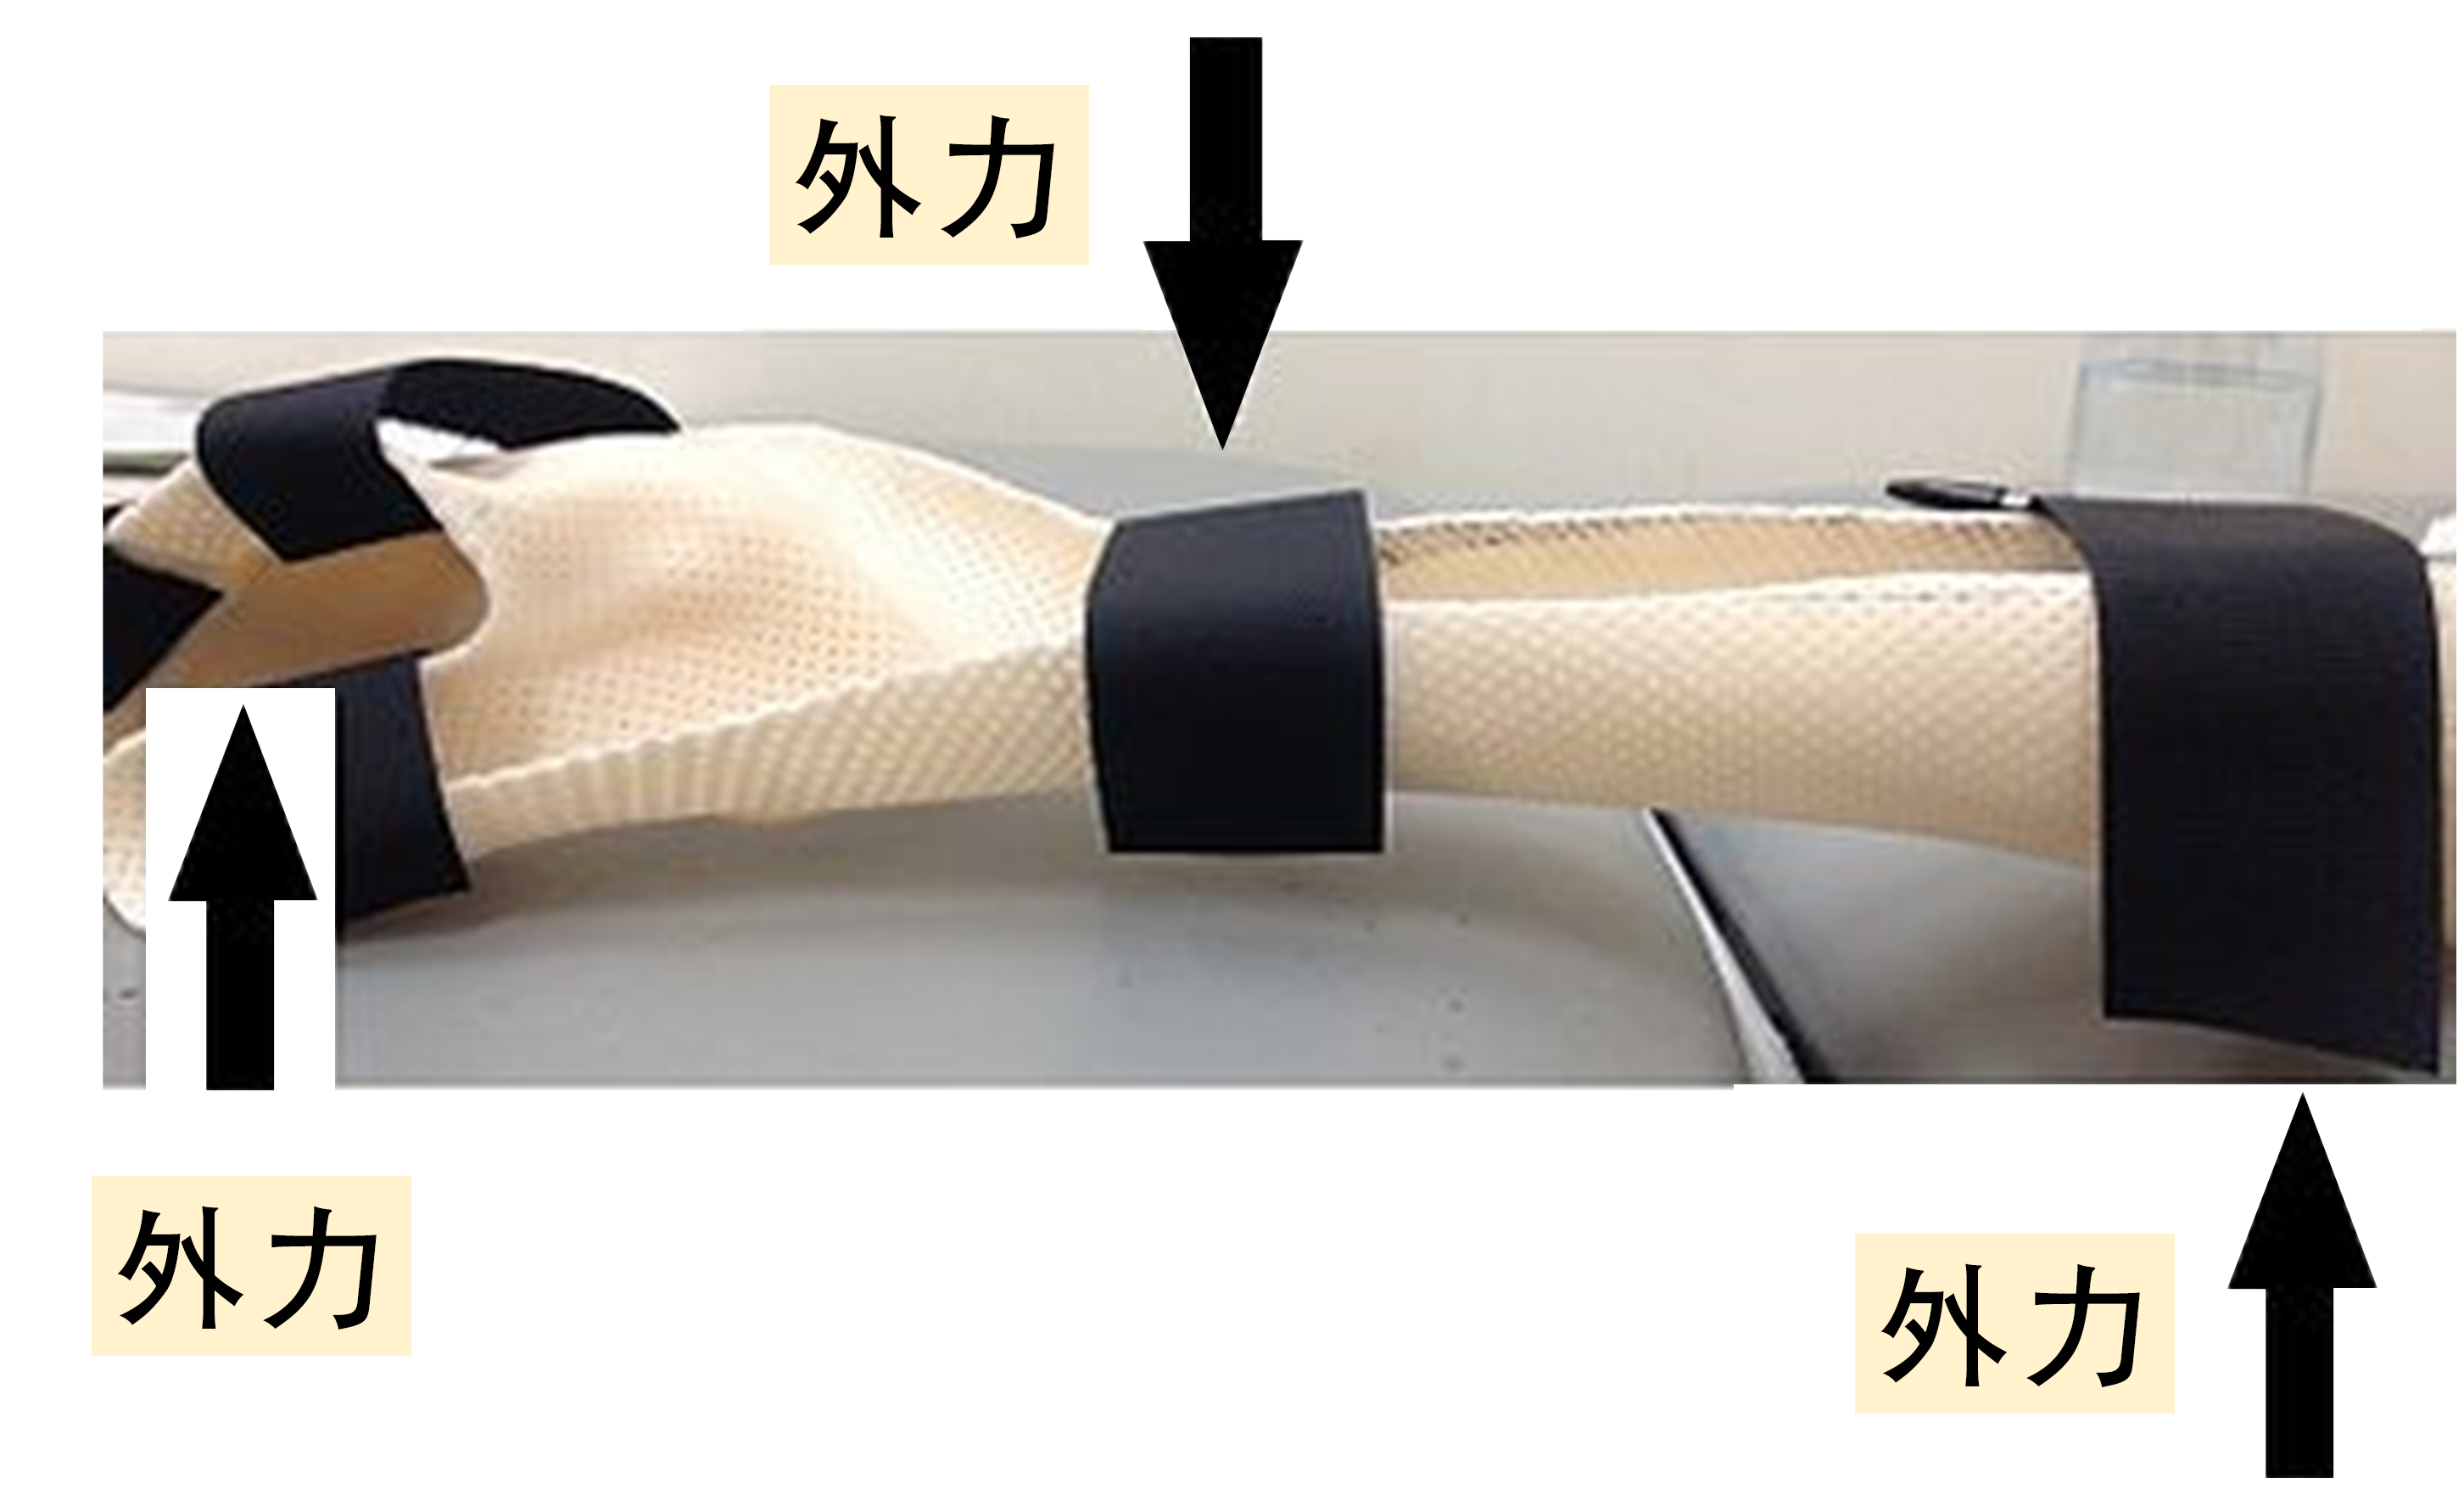 一支右手佩戴的手部固定支架及阐述了「外力牵拉性」的力学原理